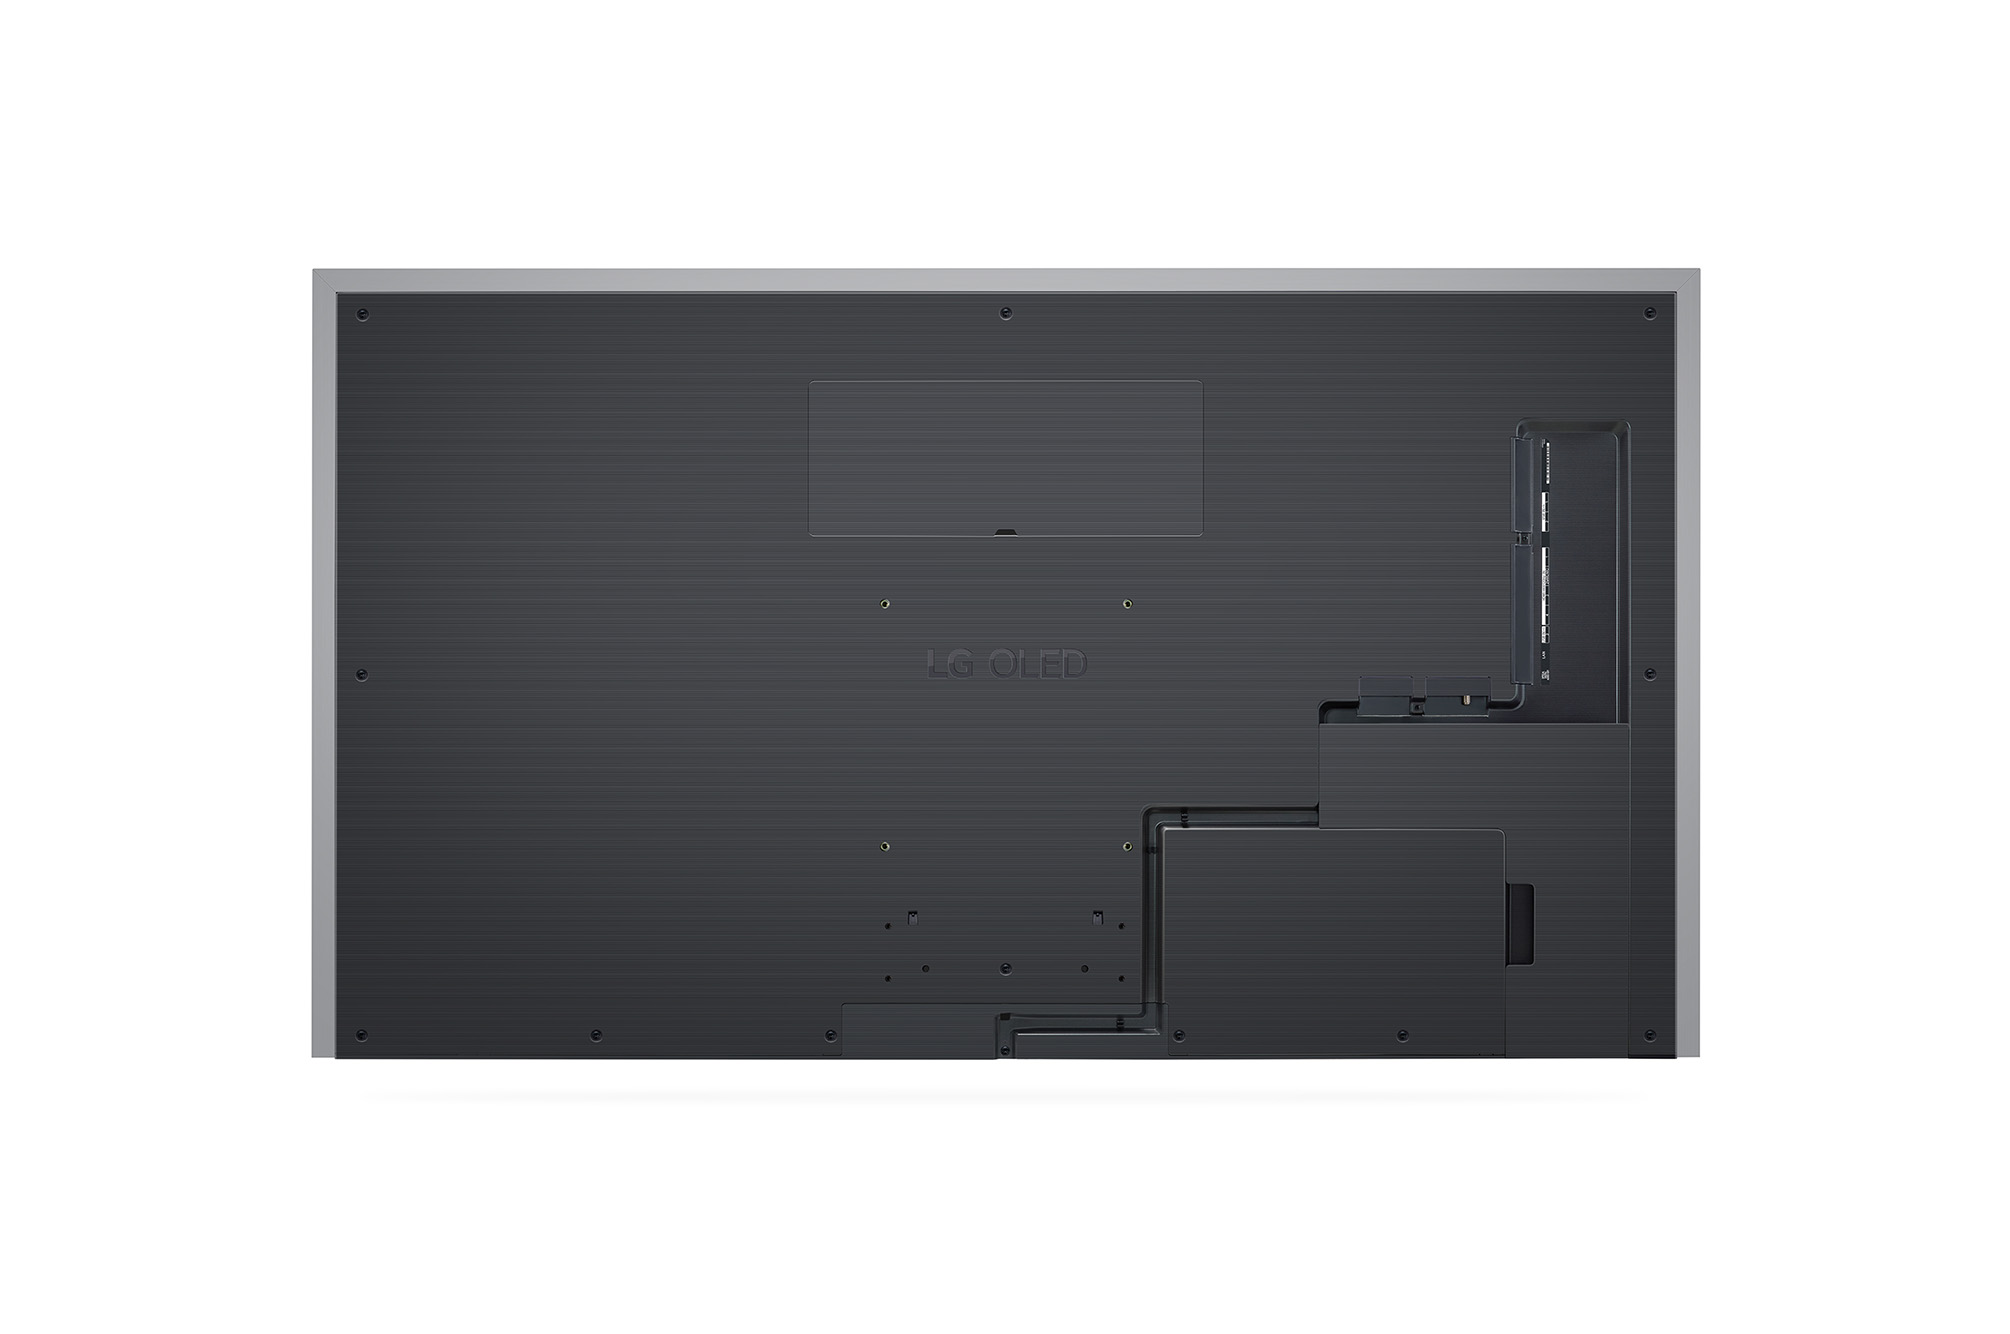 מסך טלוויזיה בטכנולוגיית LG OLED evo Gallery Edition - בגודל 65 אינץ' חכמה ברזולוציית 4K דגם: OLED65G36LA - תמונה 2